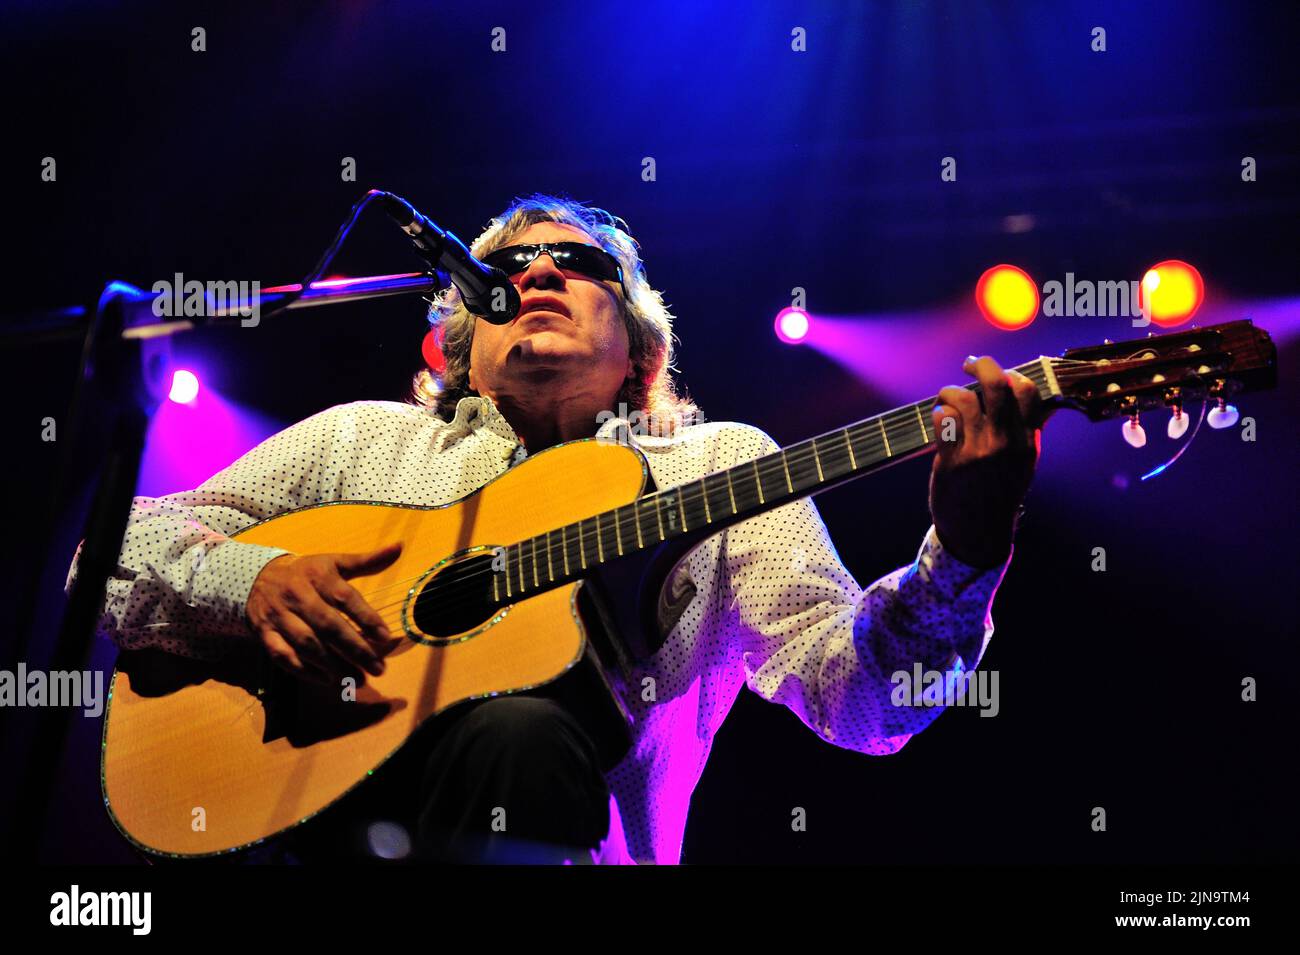 José Feliciano, chanteur et guitariste virtuose portoricain, né aveugle en permanence en raison du glaucome congénital, se présente sur scène lors d'un concert en direct, José Feliciano (né 10 septembre 1945) est un guitariste, chanteur et compositeur virtuose portoricain, photo Kazimierz Jurewicz Banque D'Images